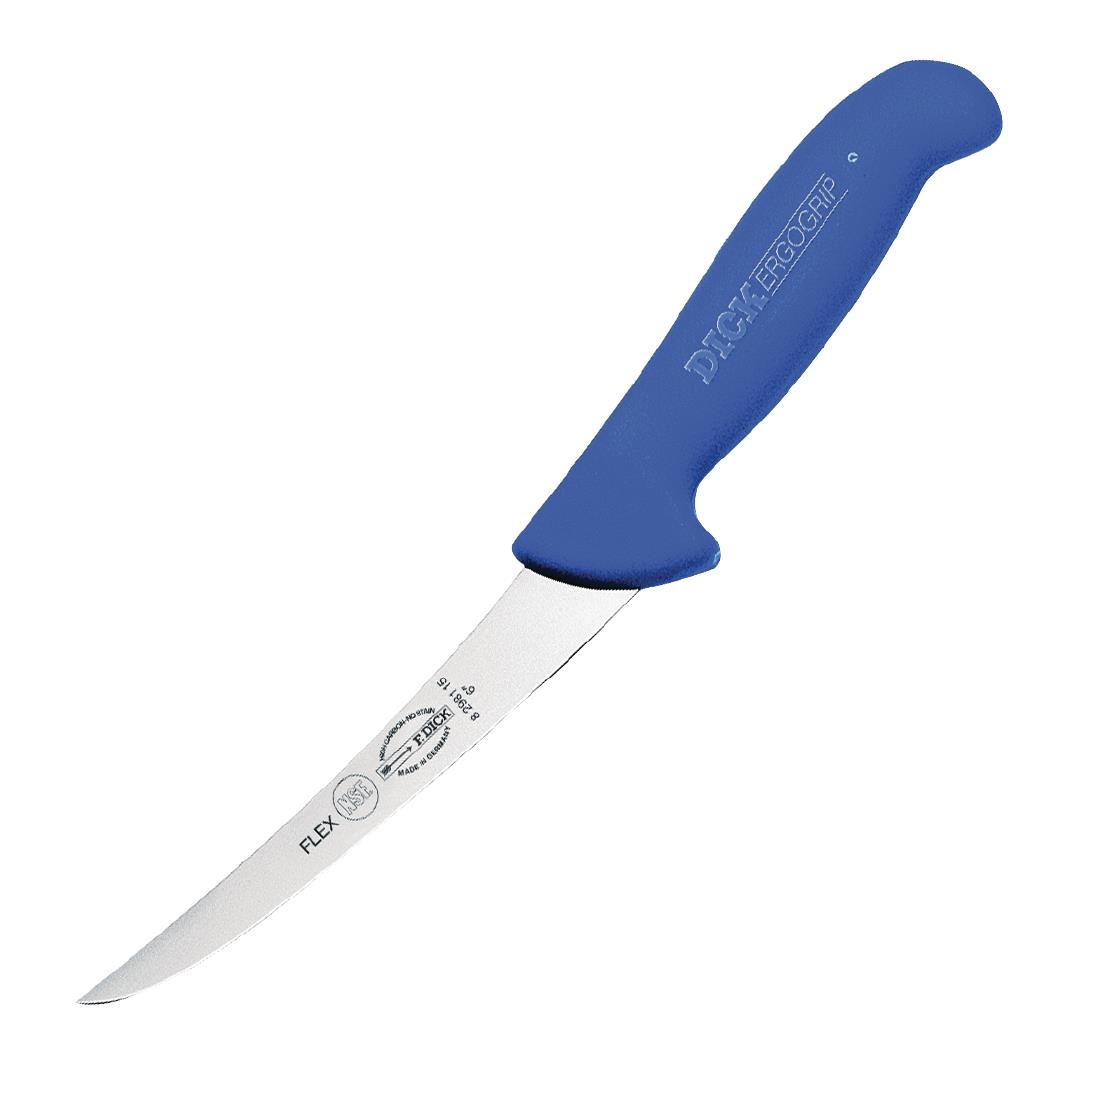 Dick Ergogrip Flexible Boning Knife Curved 6